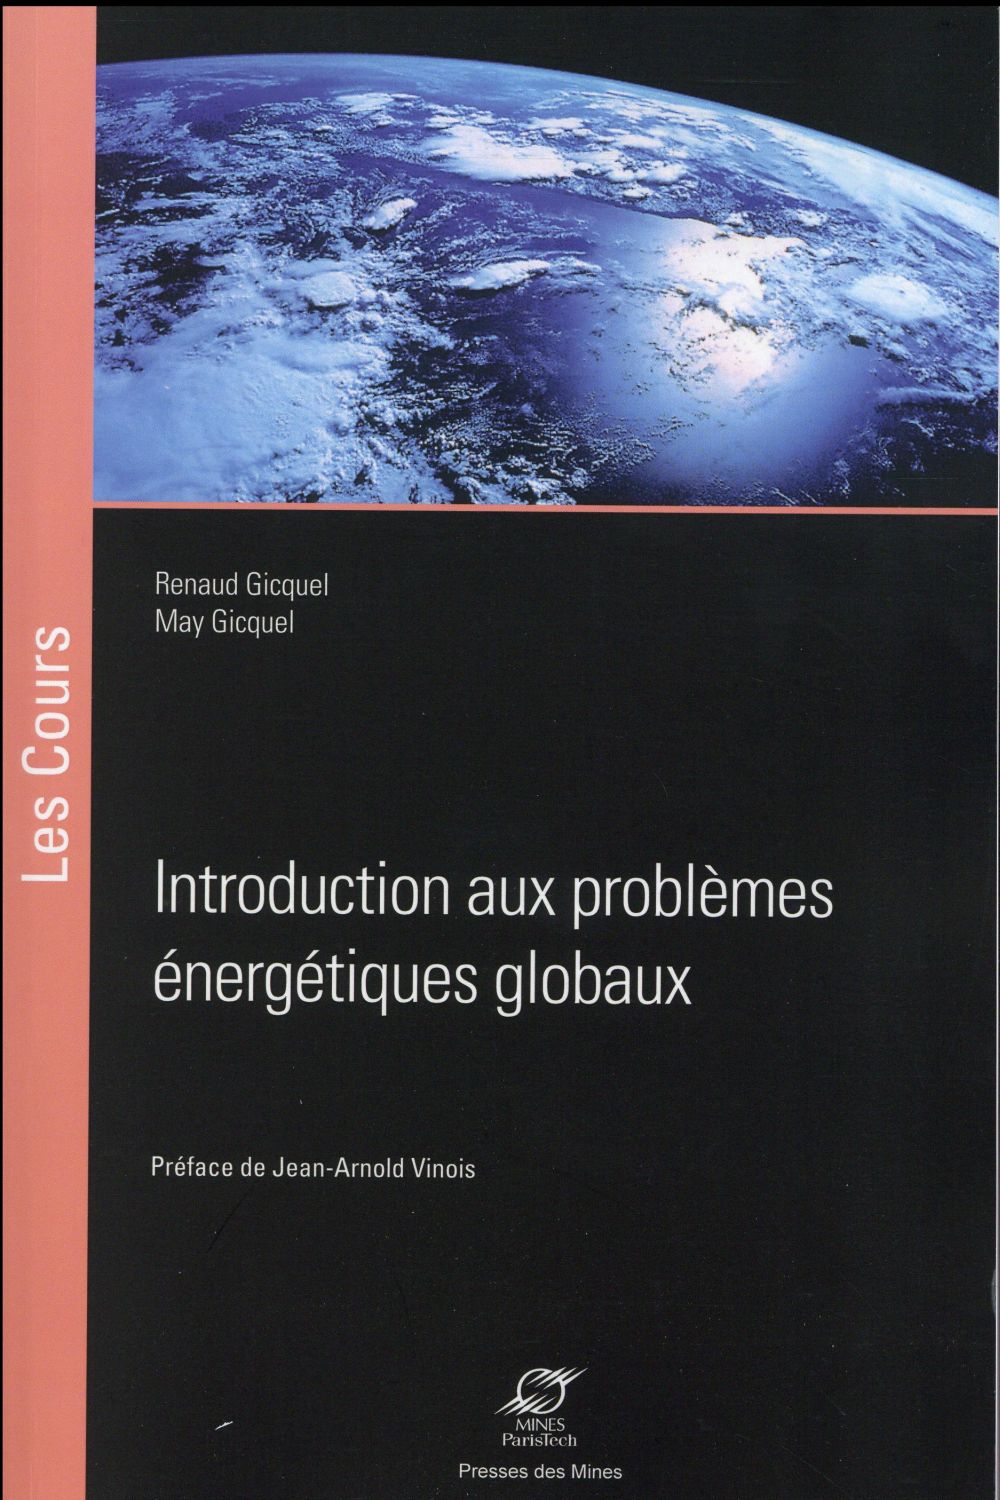 INTRODUCTION AUX PROBLEMES ENERGETIQUES GLOBAUX